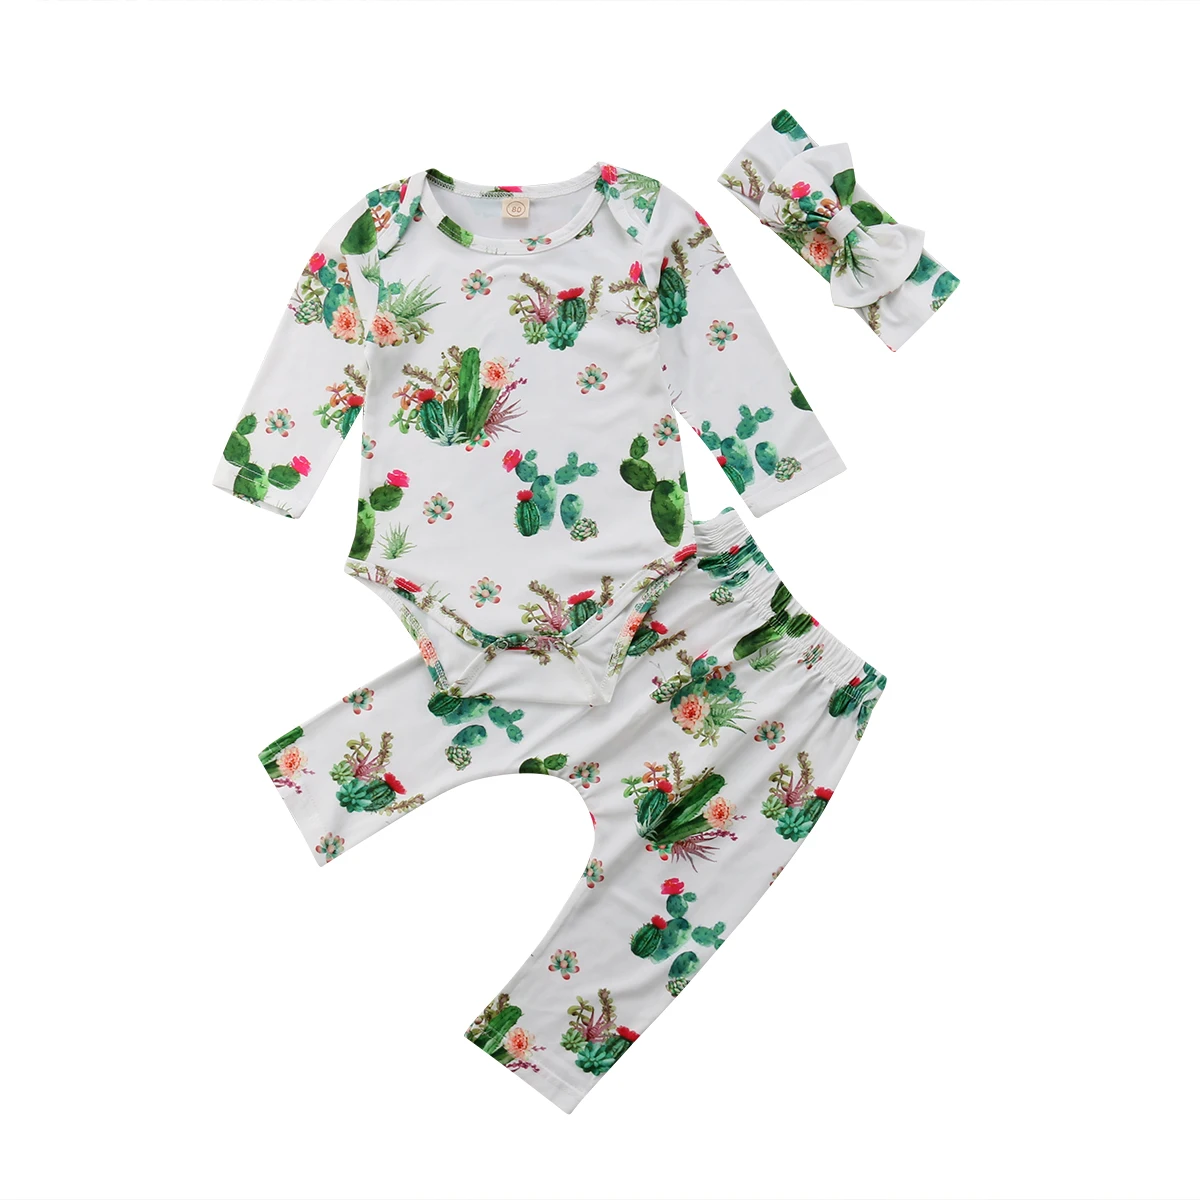 Фото В 2019 году комплект одежды с рисунком кактуса для новорожденных мальчиков и